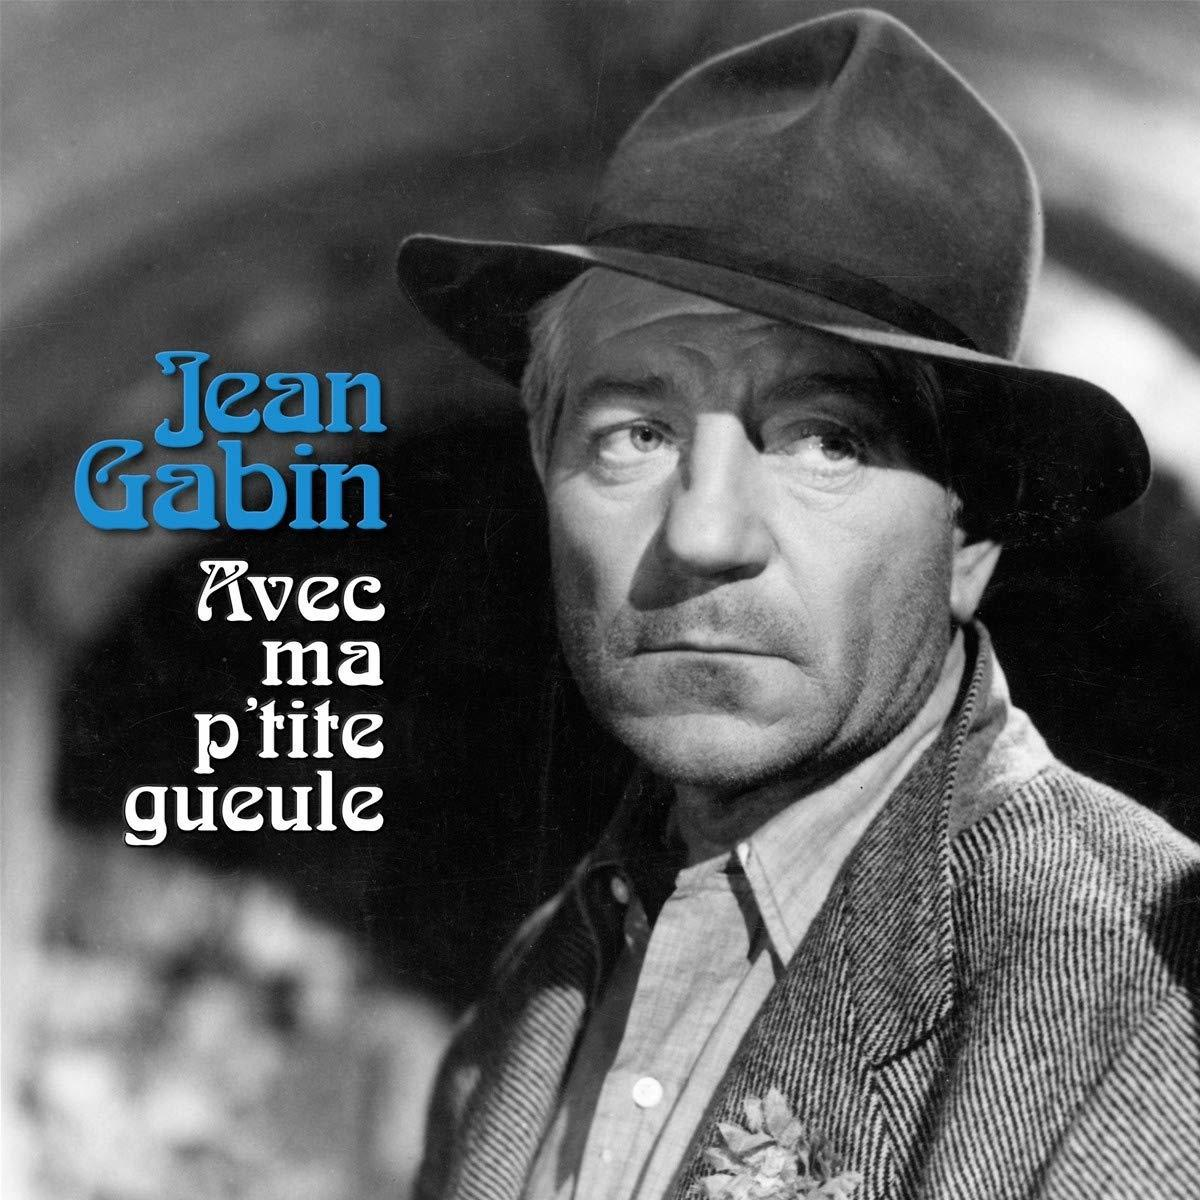 Jean Gabin - Avec Ma - P\'Tite Gueule (Vinyl)